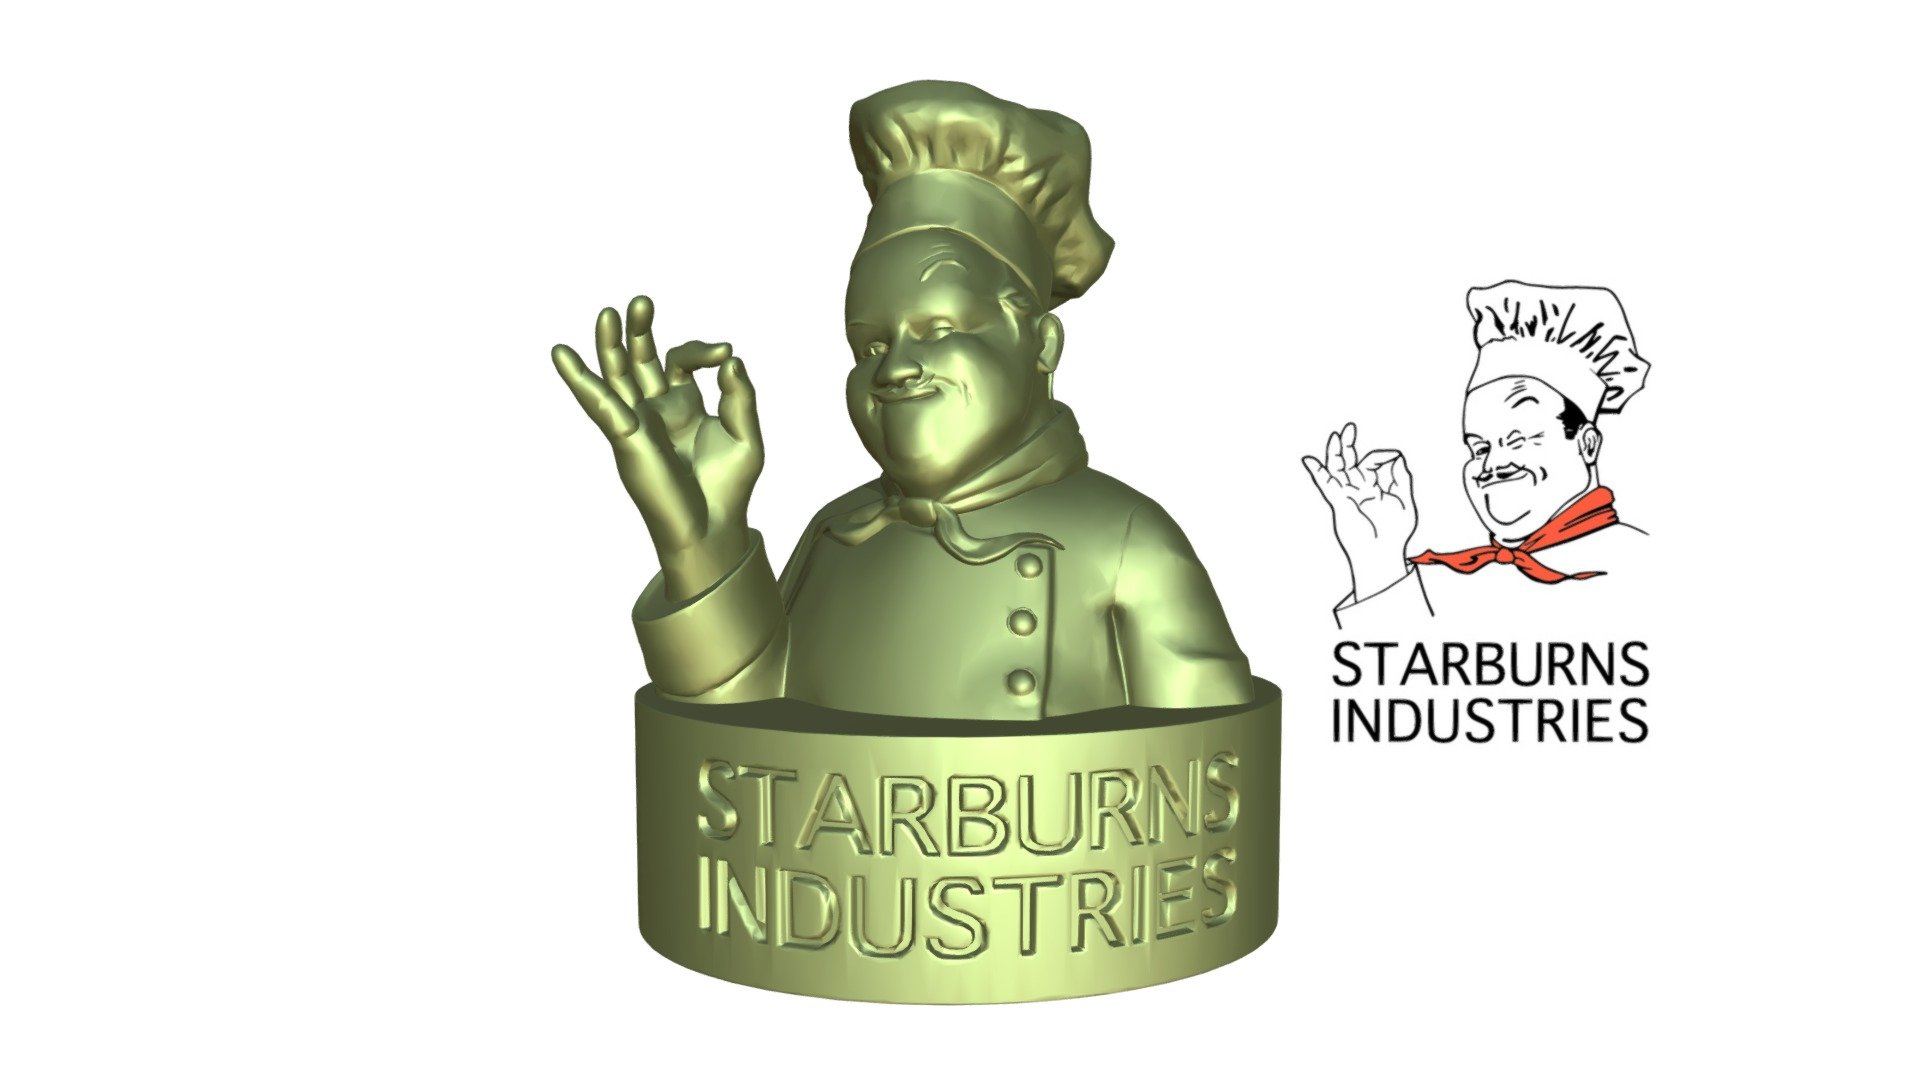 ArtStation - Toy Design / Concept - Starburns Chef